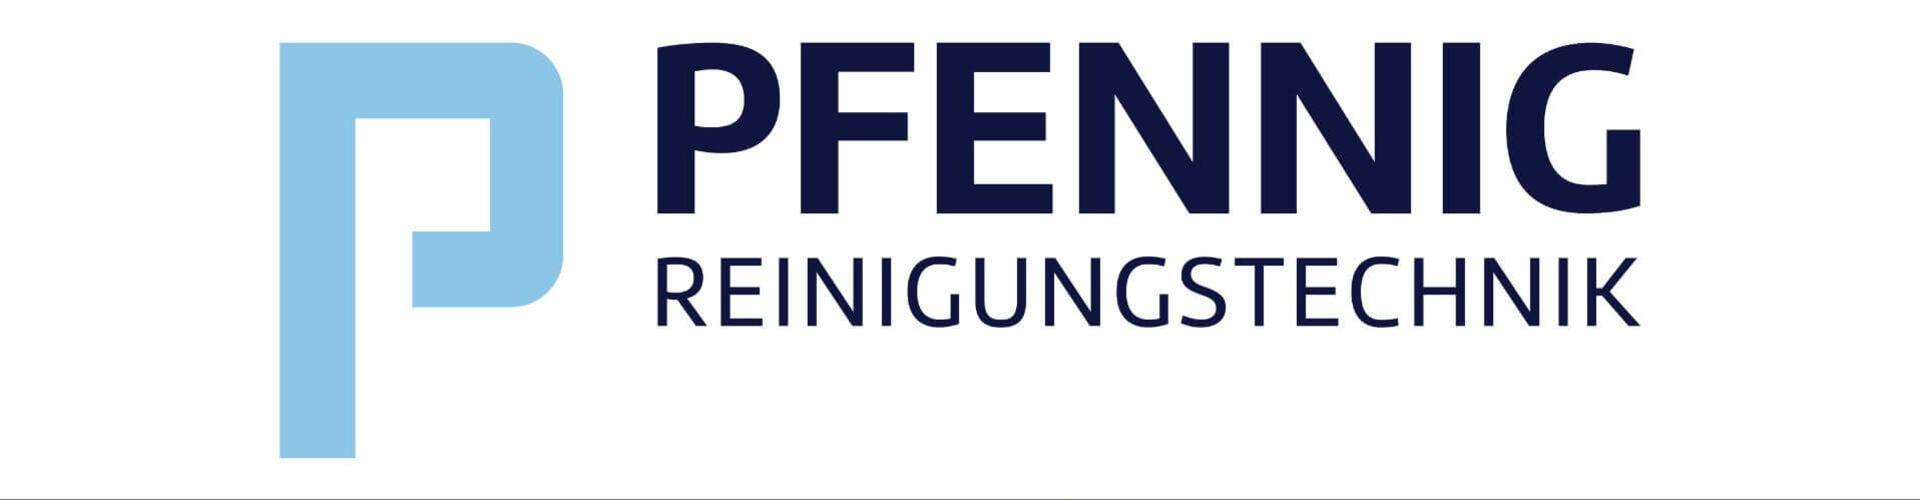 PFENNIG Reinigungstechnik GmbH cover